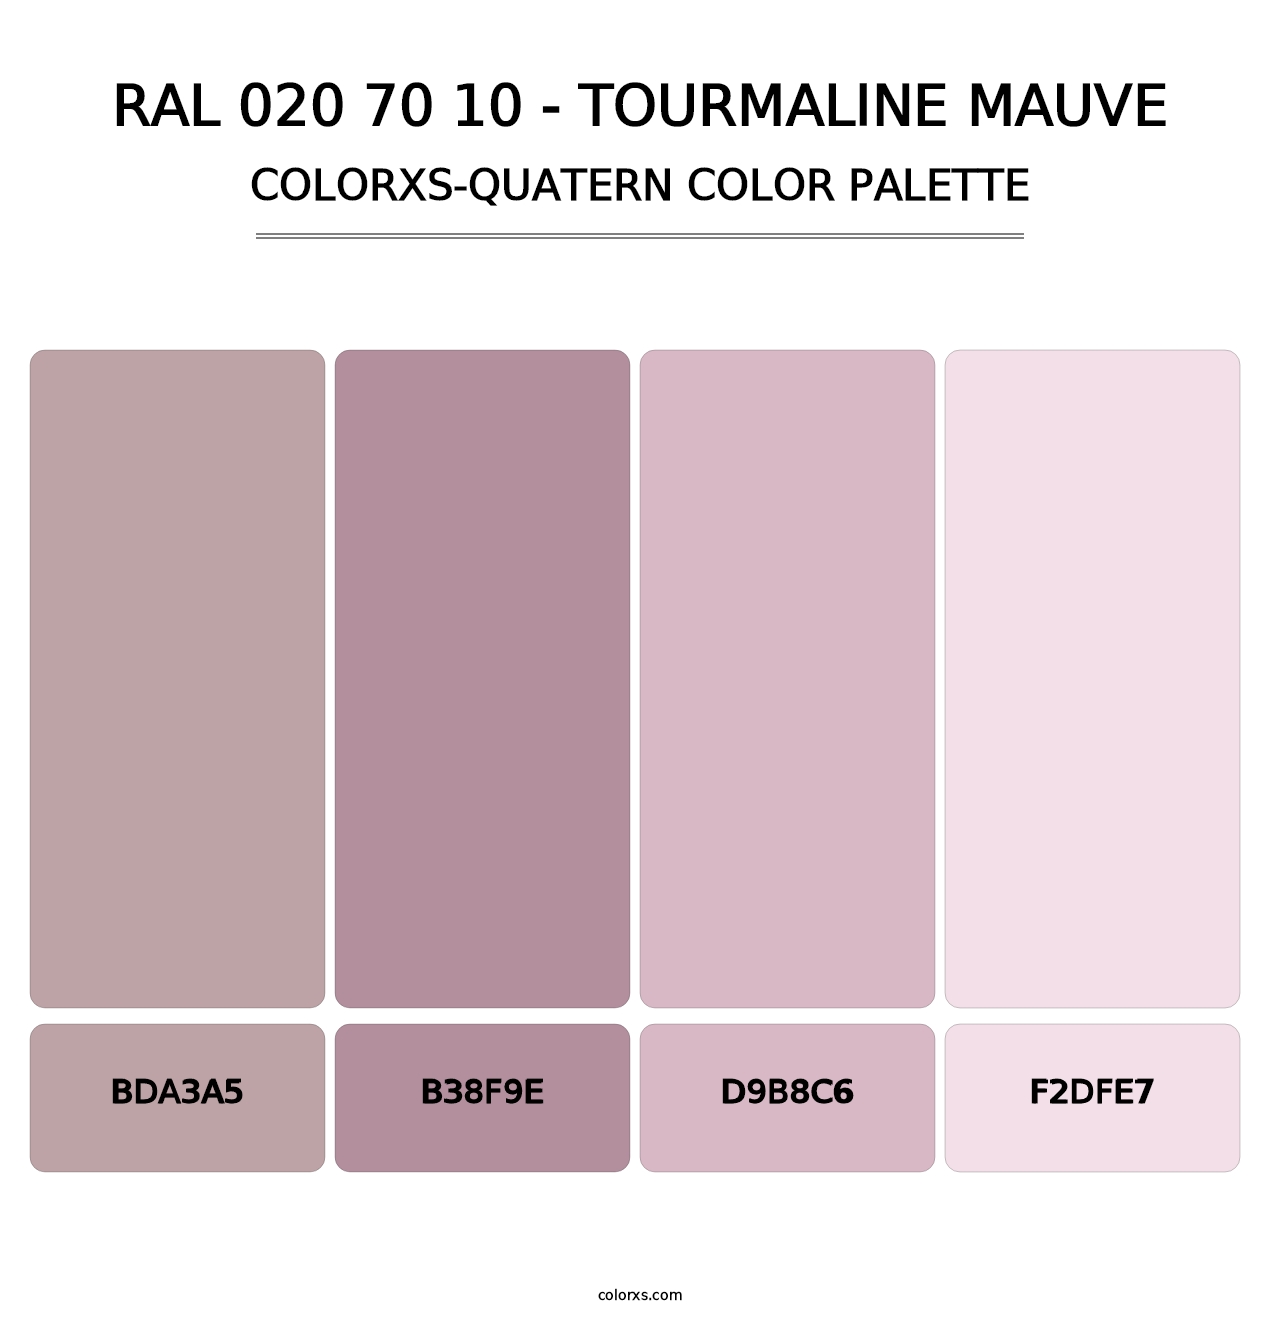 RAL 020 70 10 - Tourmaline Mauve - Colorxs Quatern Palette